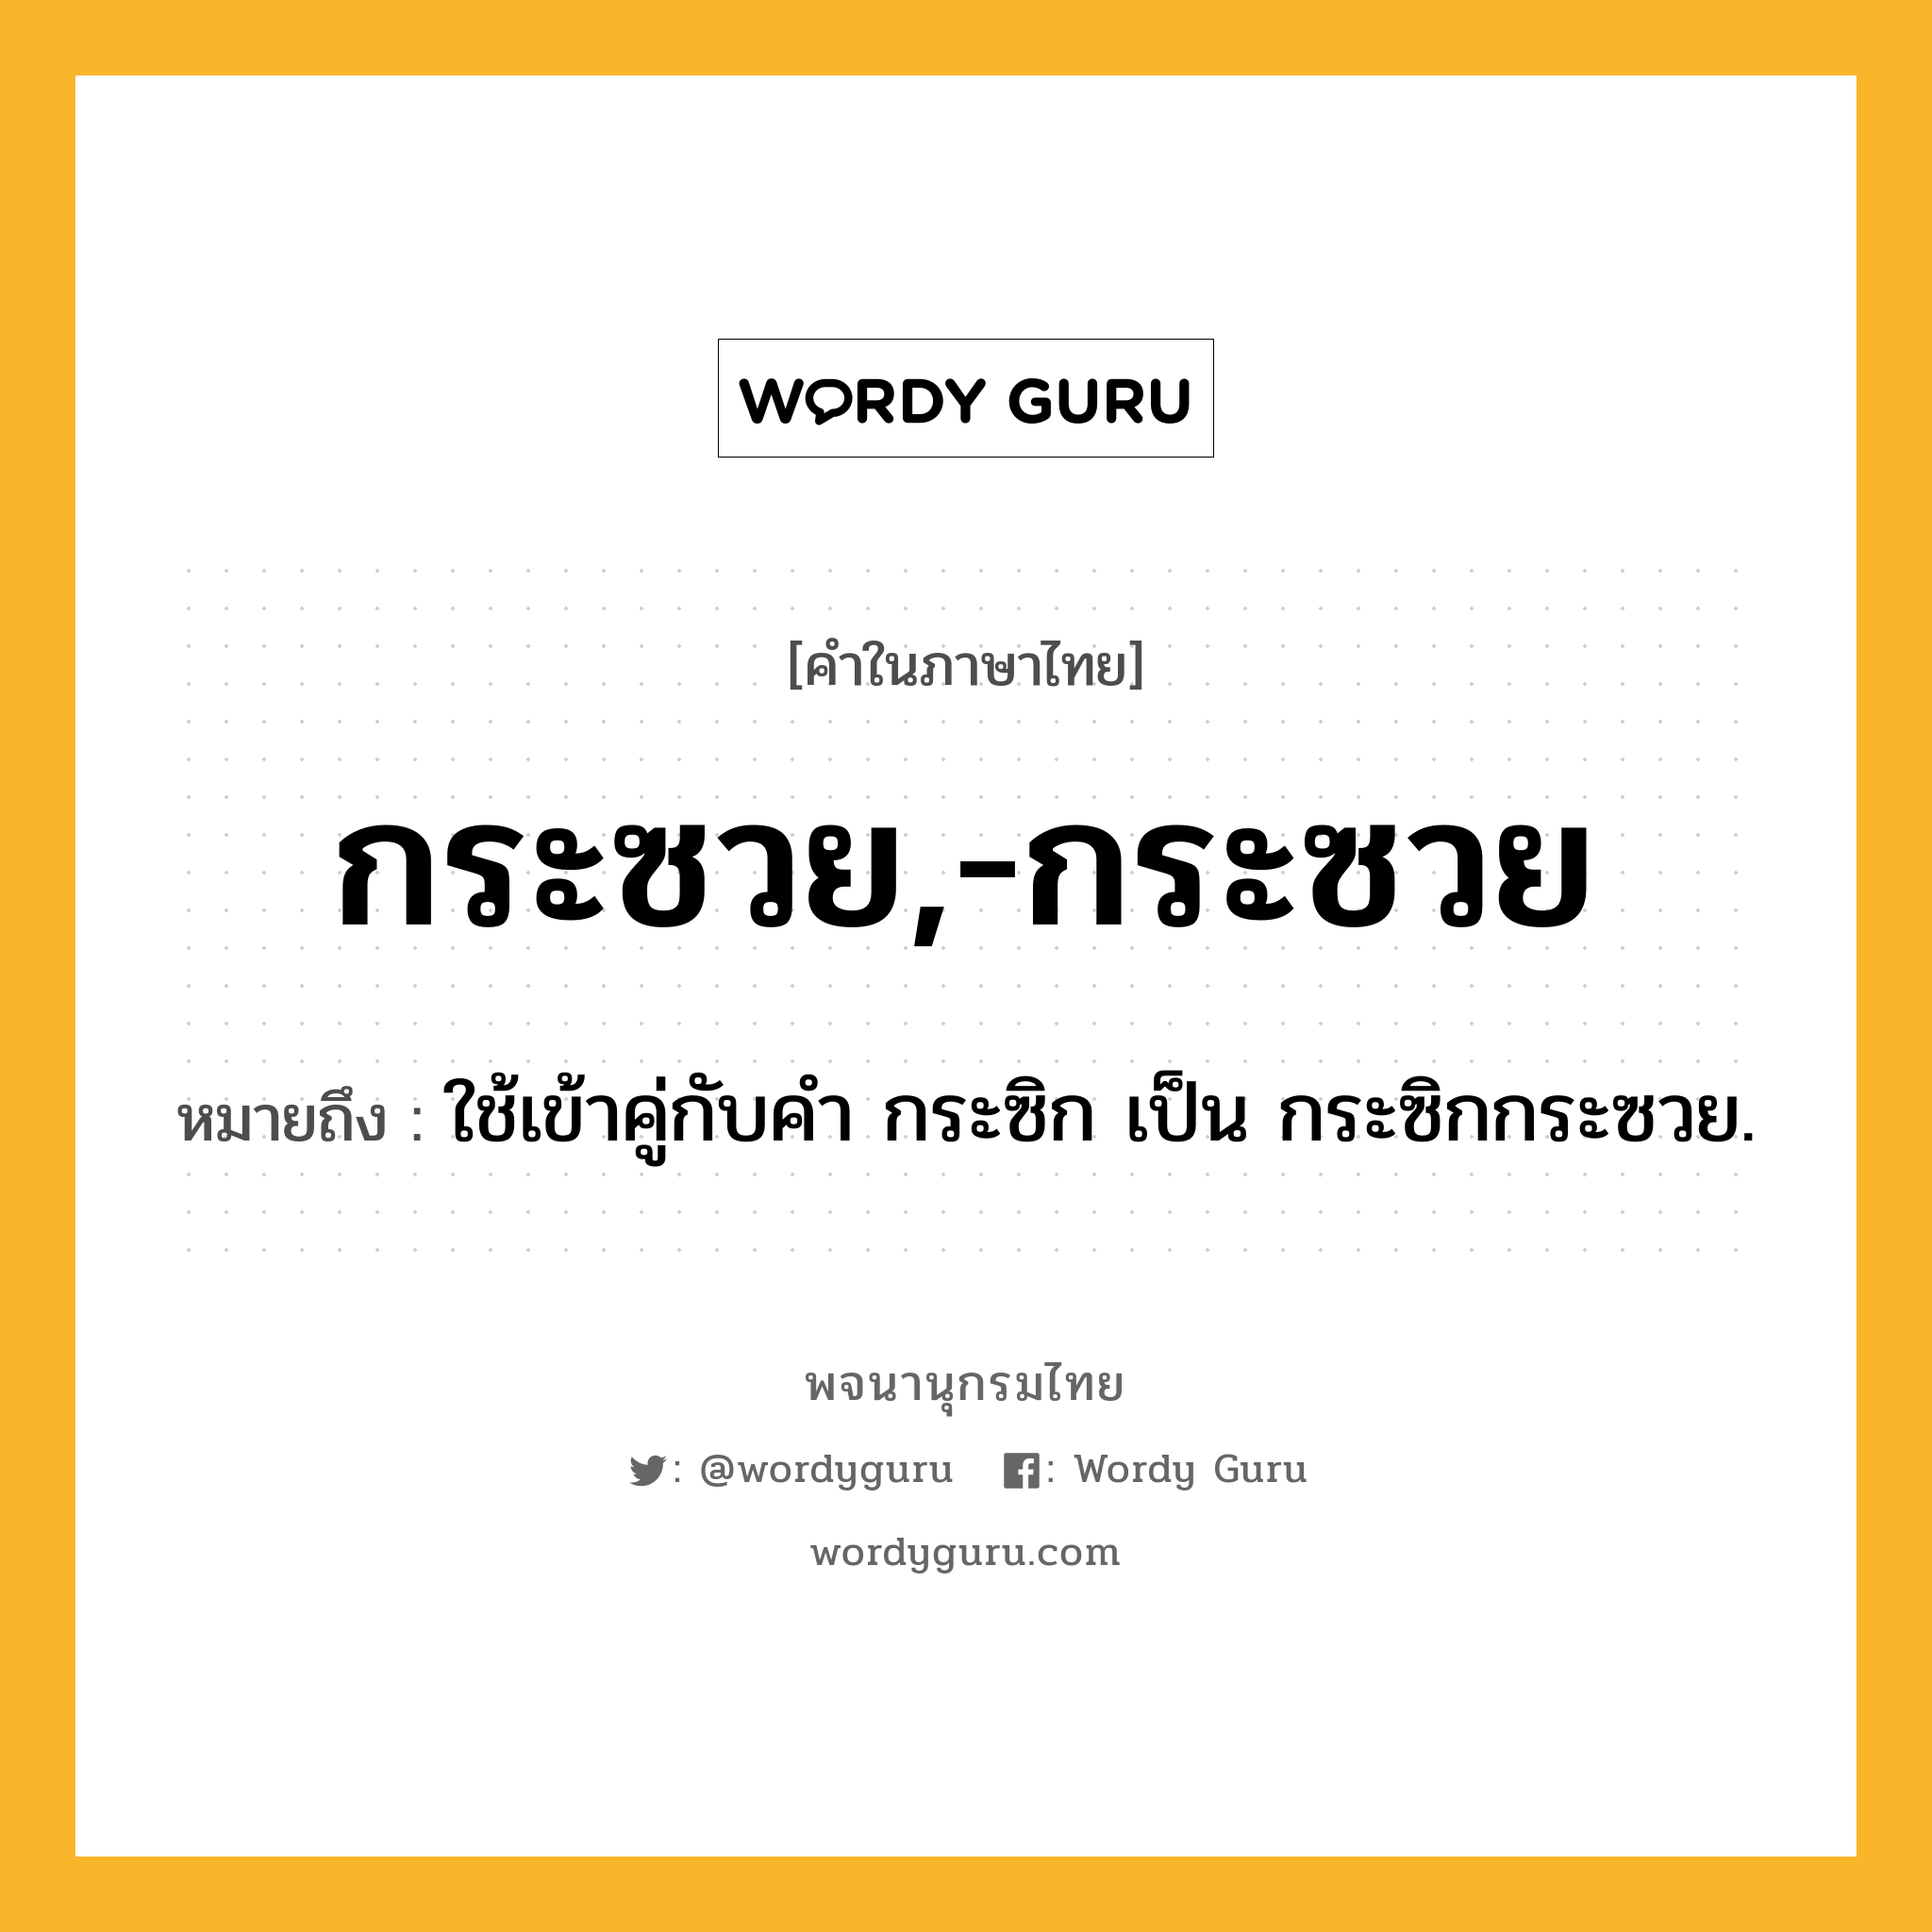 กระซวย,-กระซวย ความหมาย หมายถึงอะไร?, คำในภาษาไทย กระซวย,-กระซวย หมายถึง ใช้เข้าคู่กับคํา กระซิก เป็น กระซิกกระซวย.